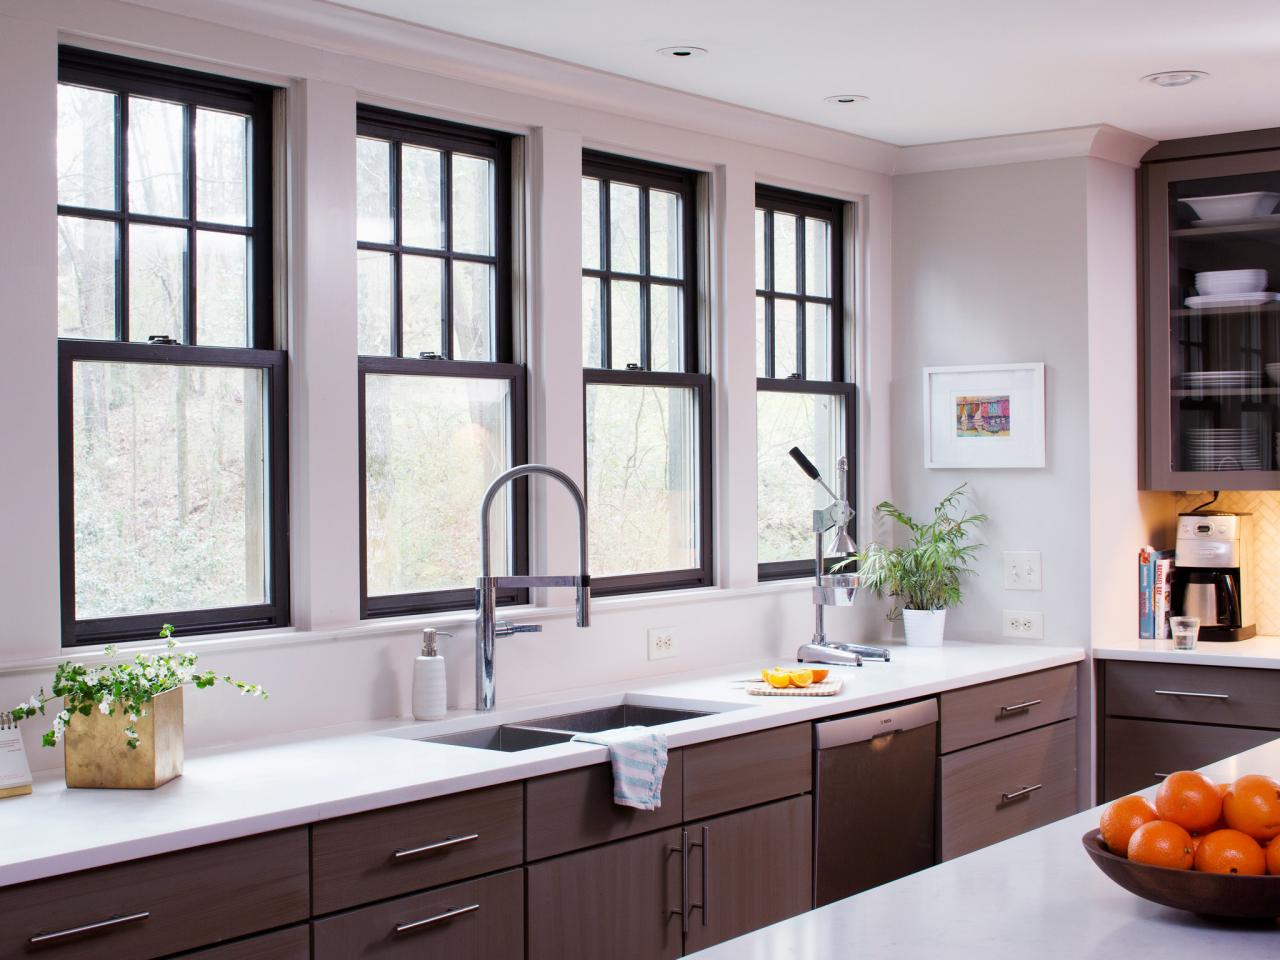 kitchen design with shuttered windows